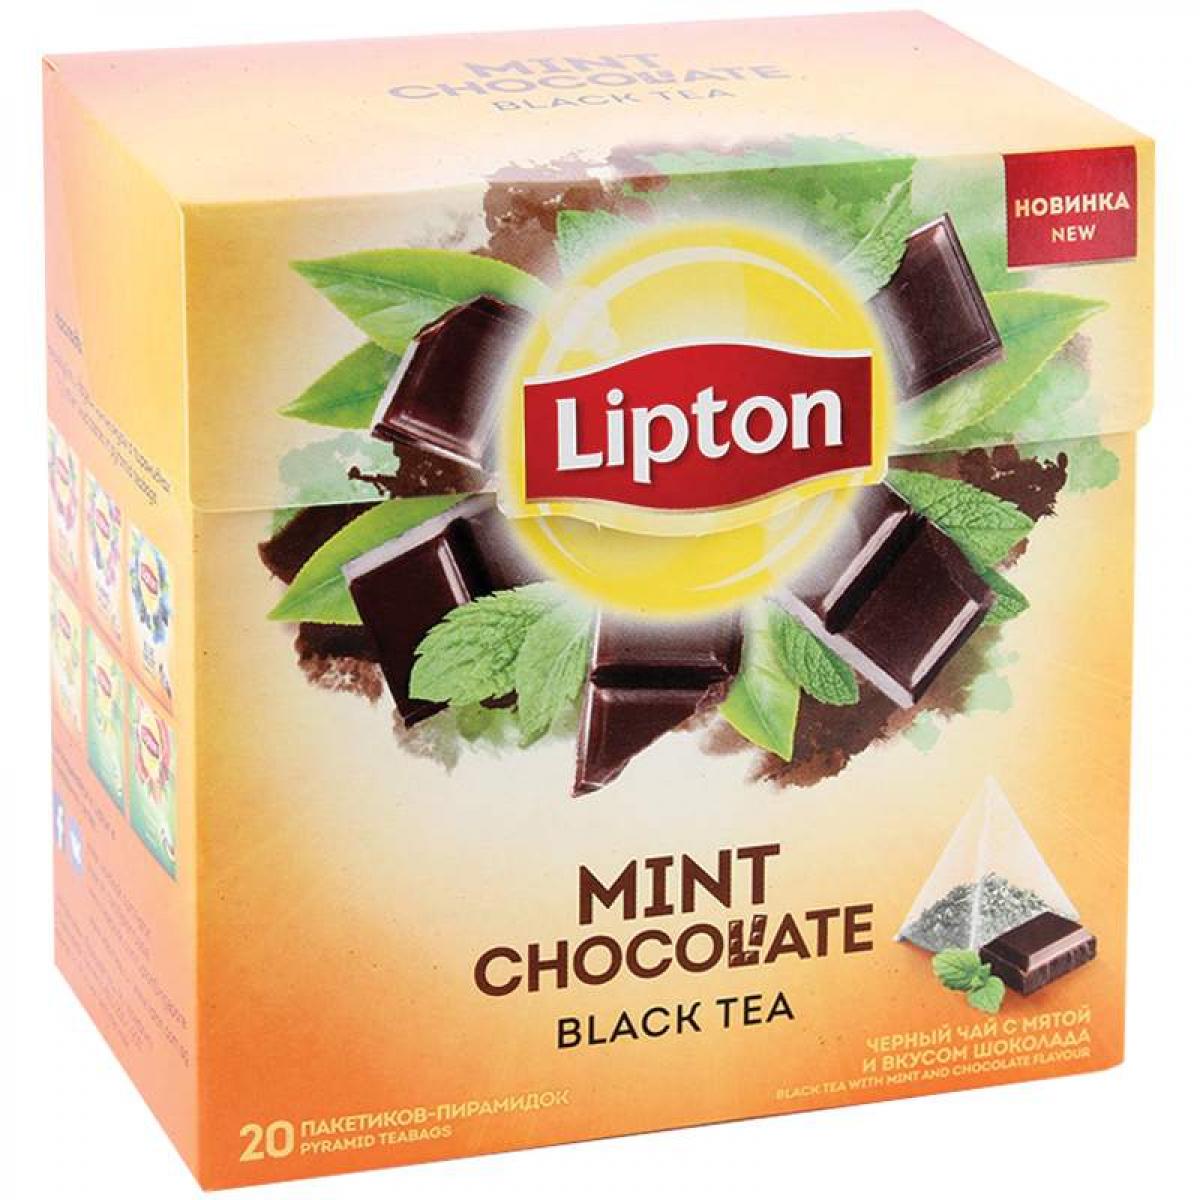 Липтон дома. Чай Липтон шоколад мята. Чай Липтон 20 пирамидок. Чай Липтон шоколад в пакетиках. Липтон черный чай вкусы.